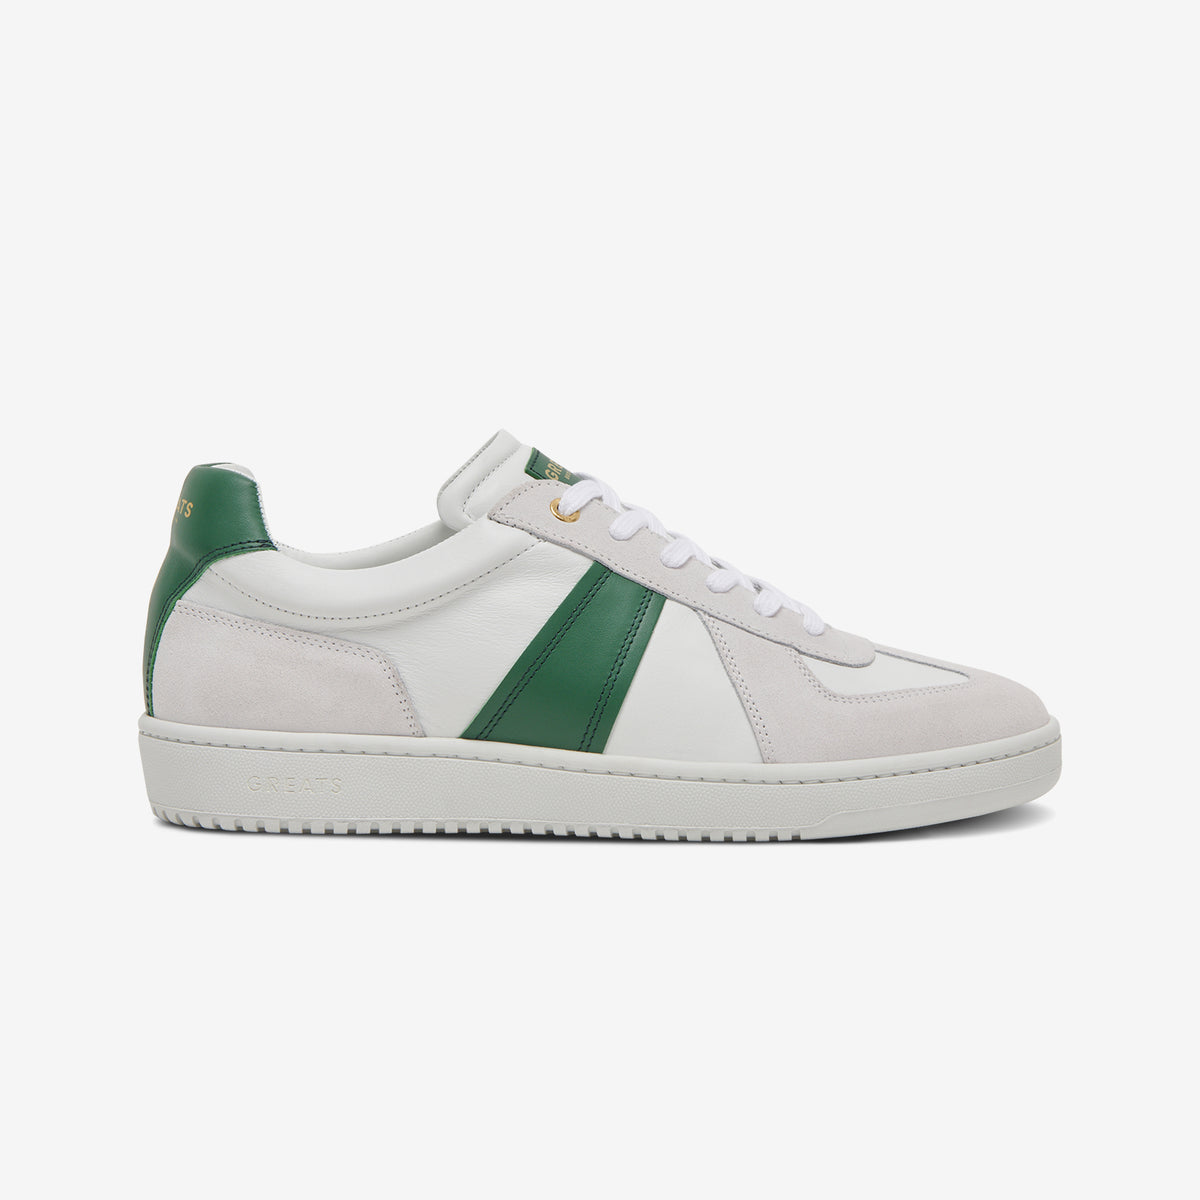 Greats - The GAT Sneaker - Blanco Green - Men's Shoe – GREATS